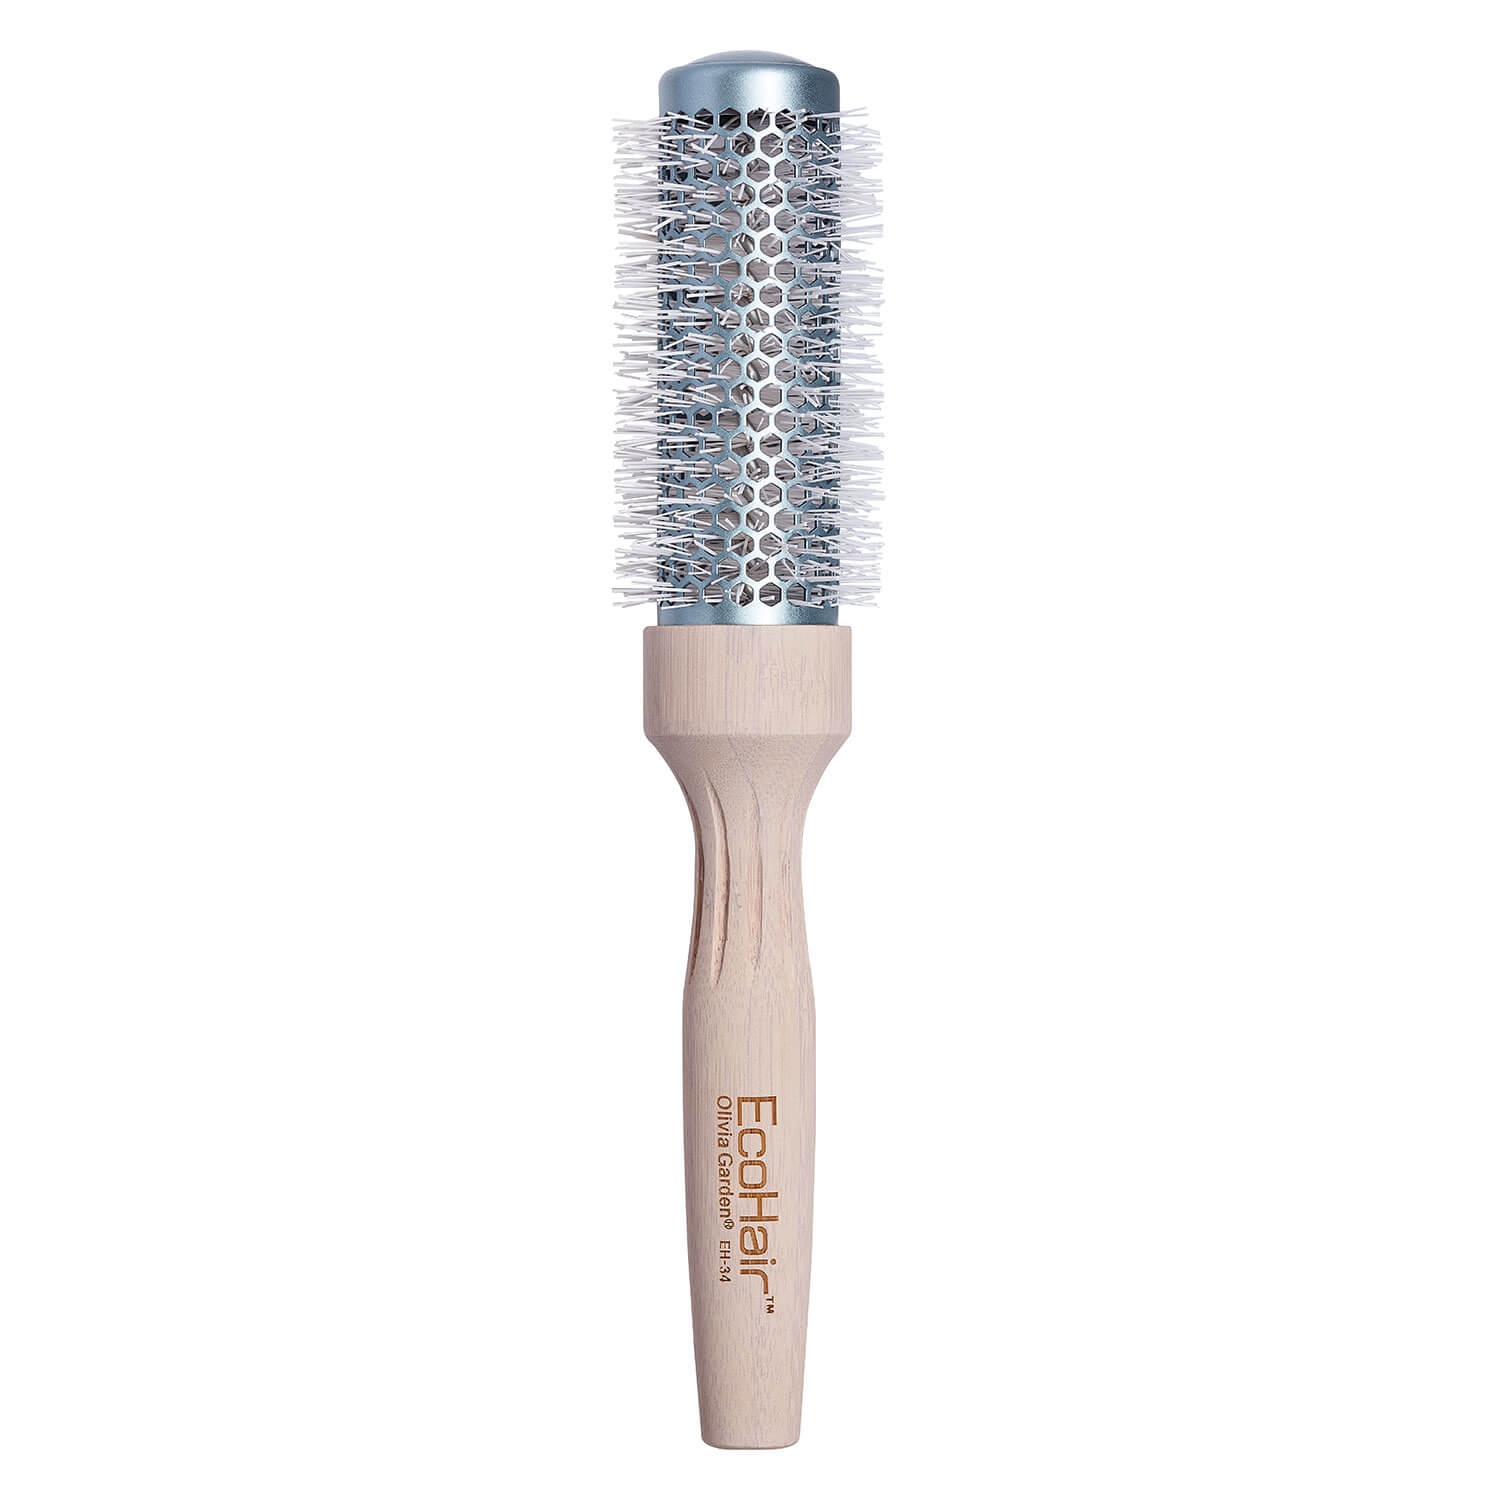 Produktbild von Eco Hair - Thermal Round Brush 34mm